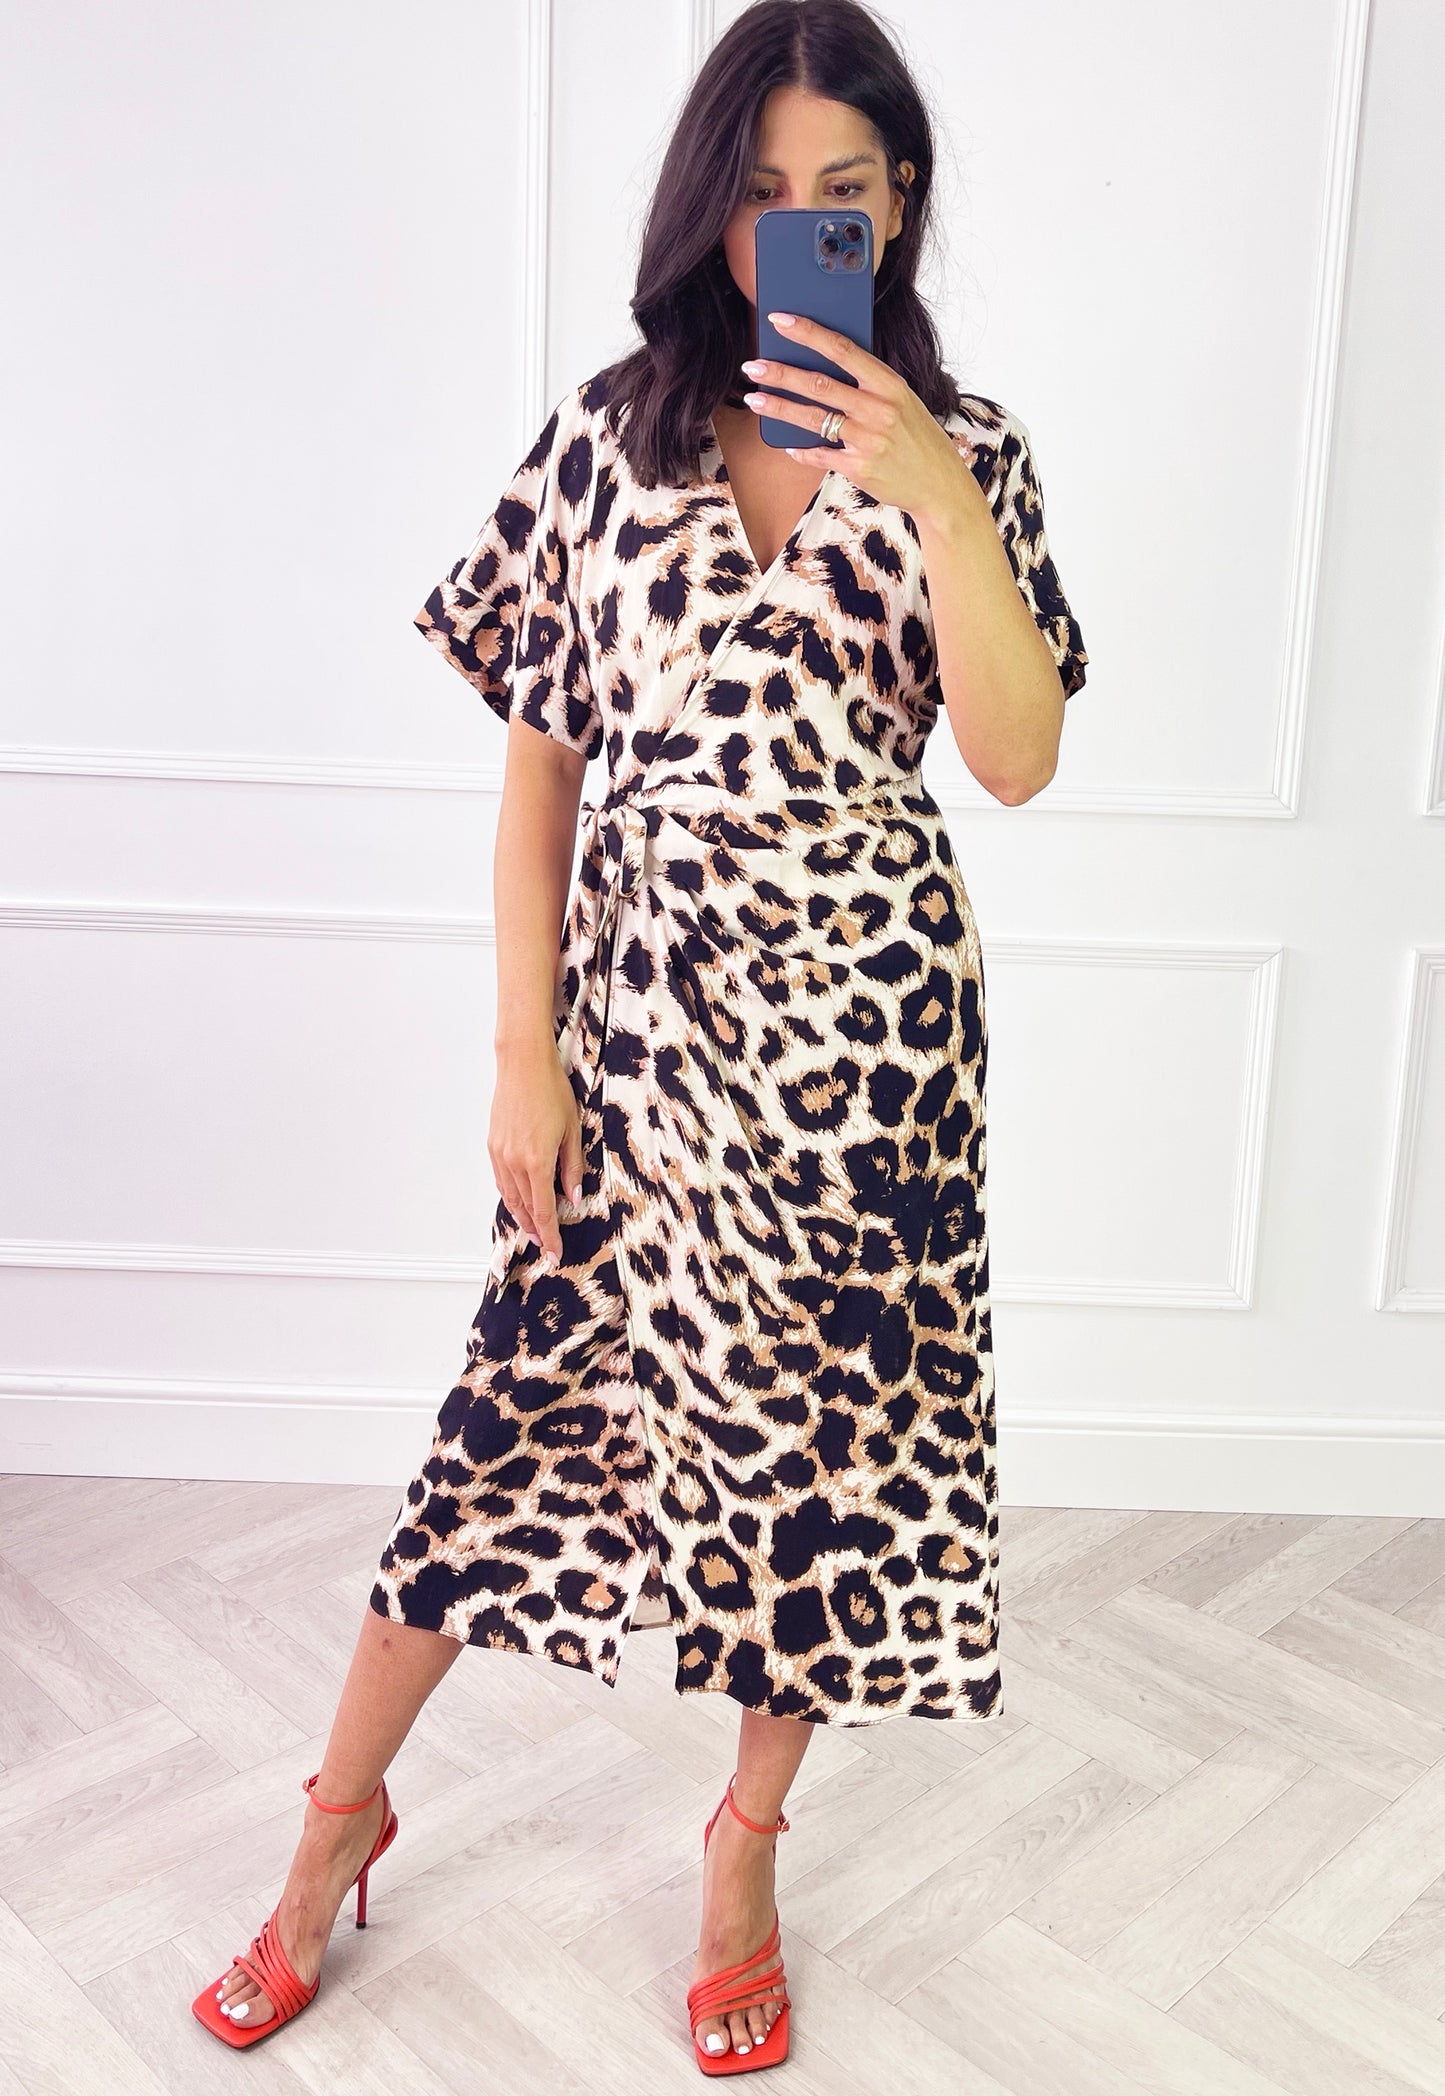 VERO MODA Ulina Leopard Print Wrap Midi Dress in Brown & Black - concretebartops